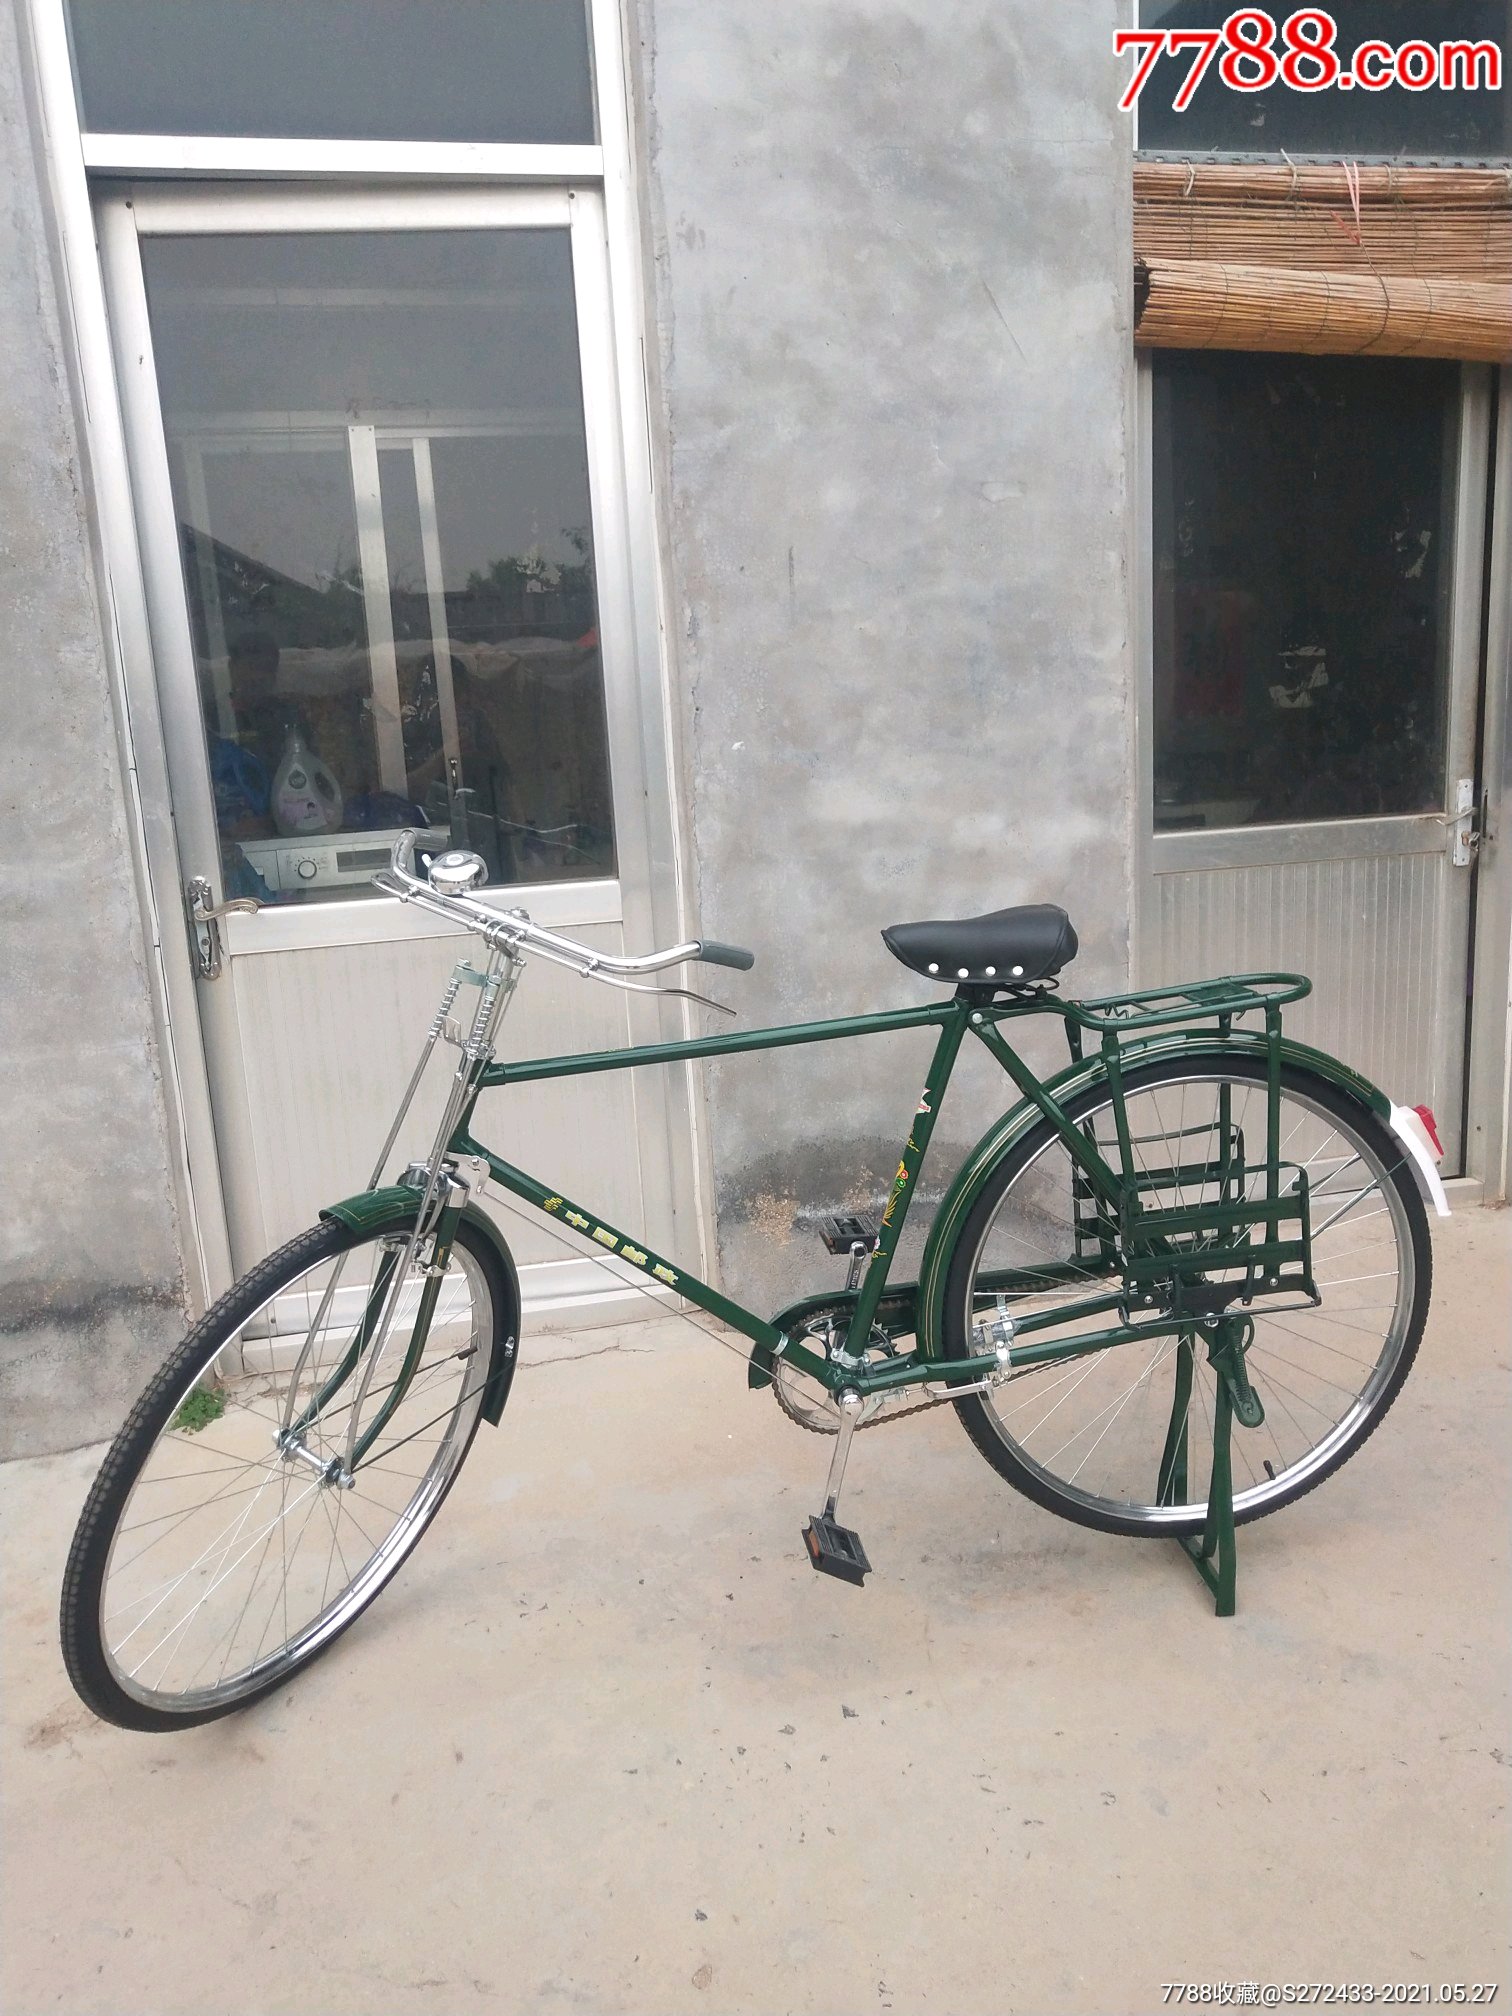 (凤凰)28军绿自行车,中国邮政,库存保存完整,原车原件无修改,品相如图